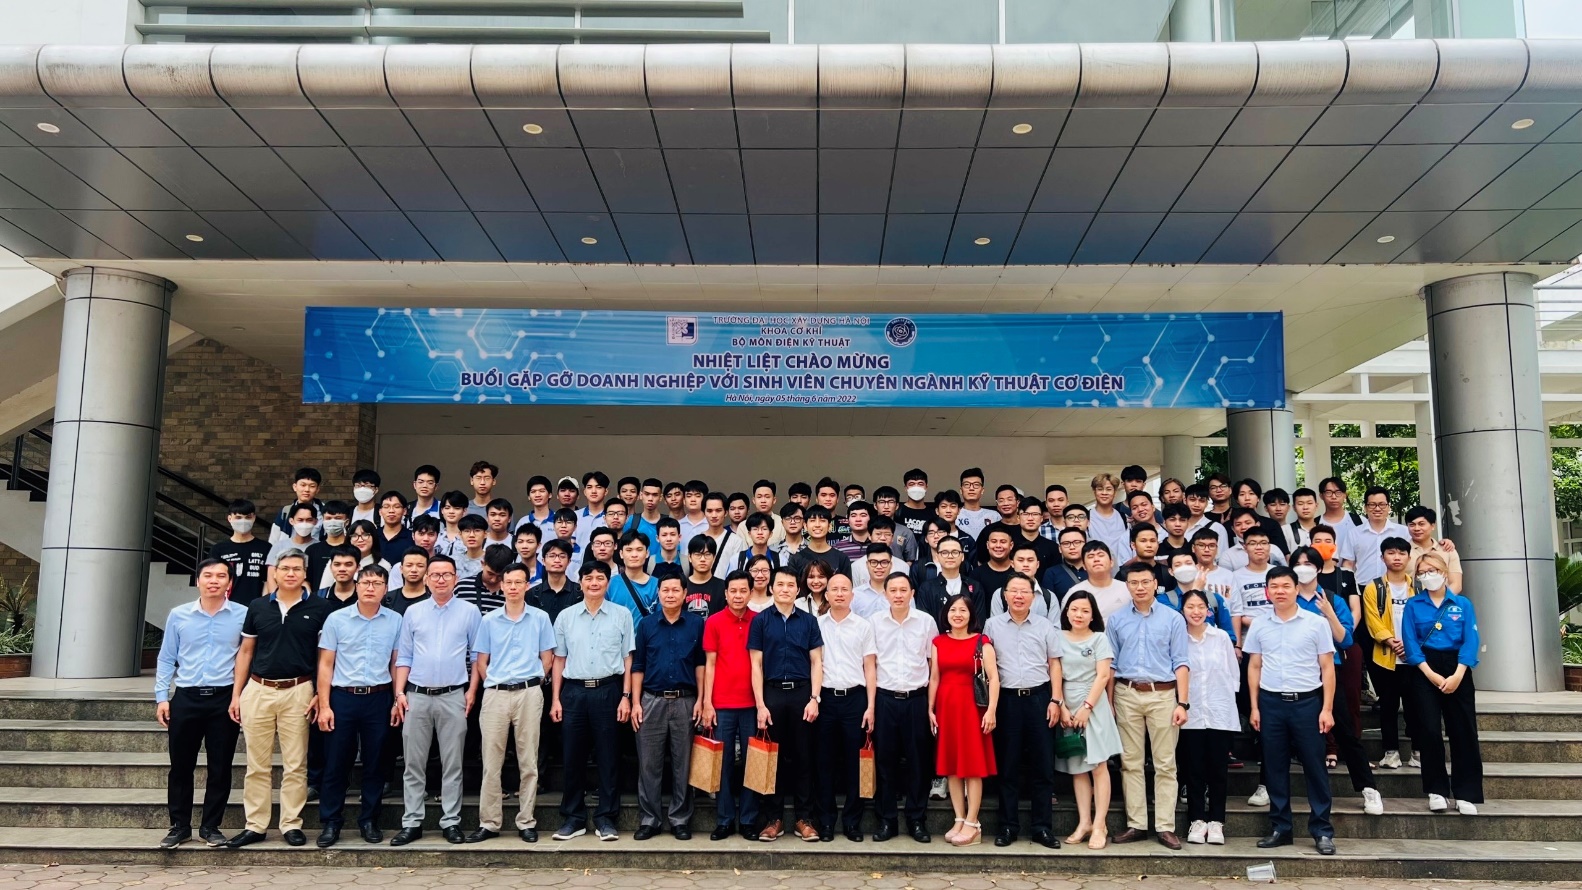 Gặp gỡ doanh nghiệp với sinh viên chuyên ngành kỹ thuật cơ điện (MEC) của trường Đại học Xây dựng Hà Nội